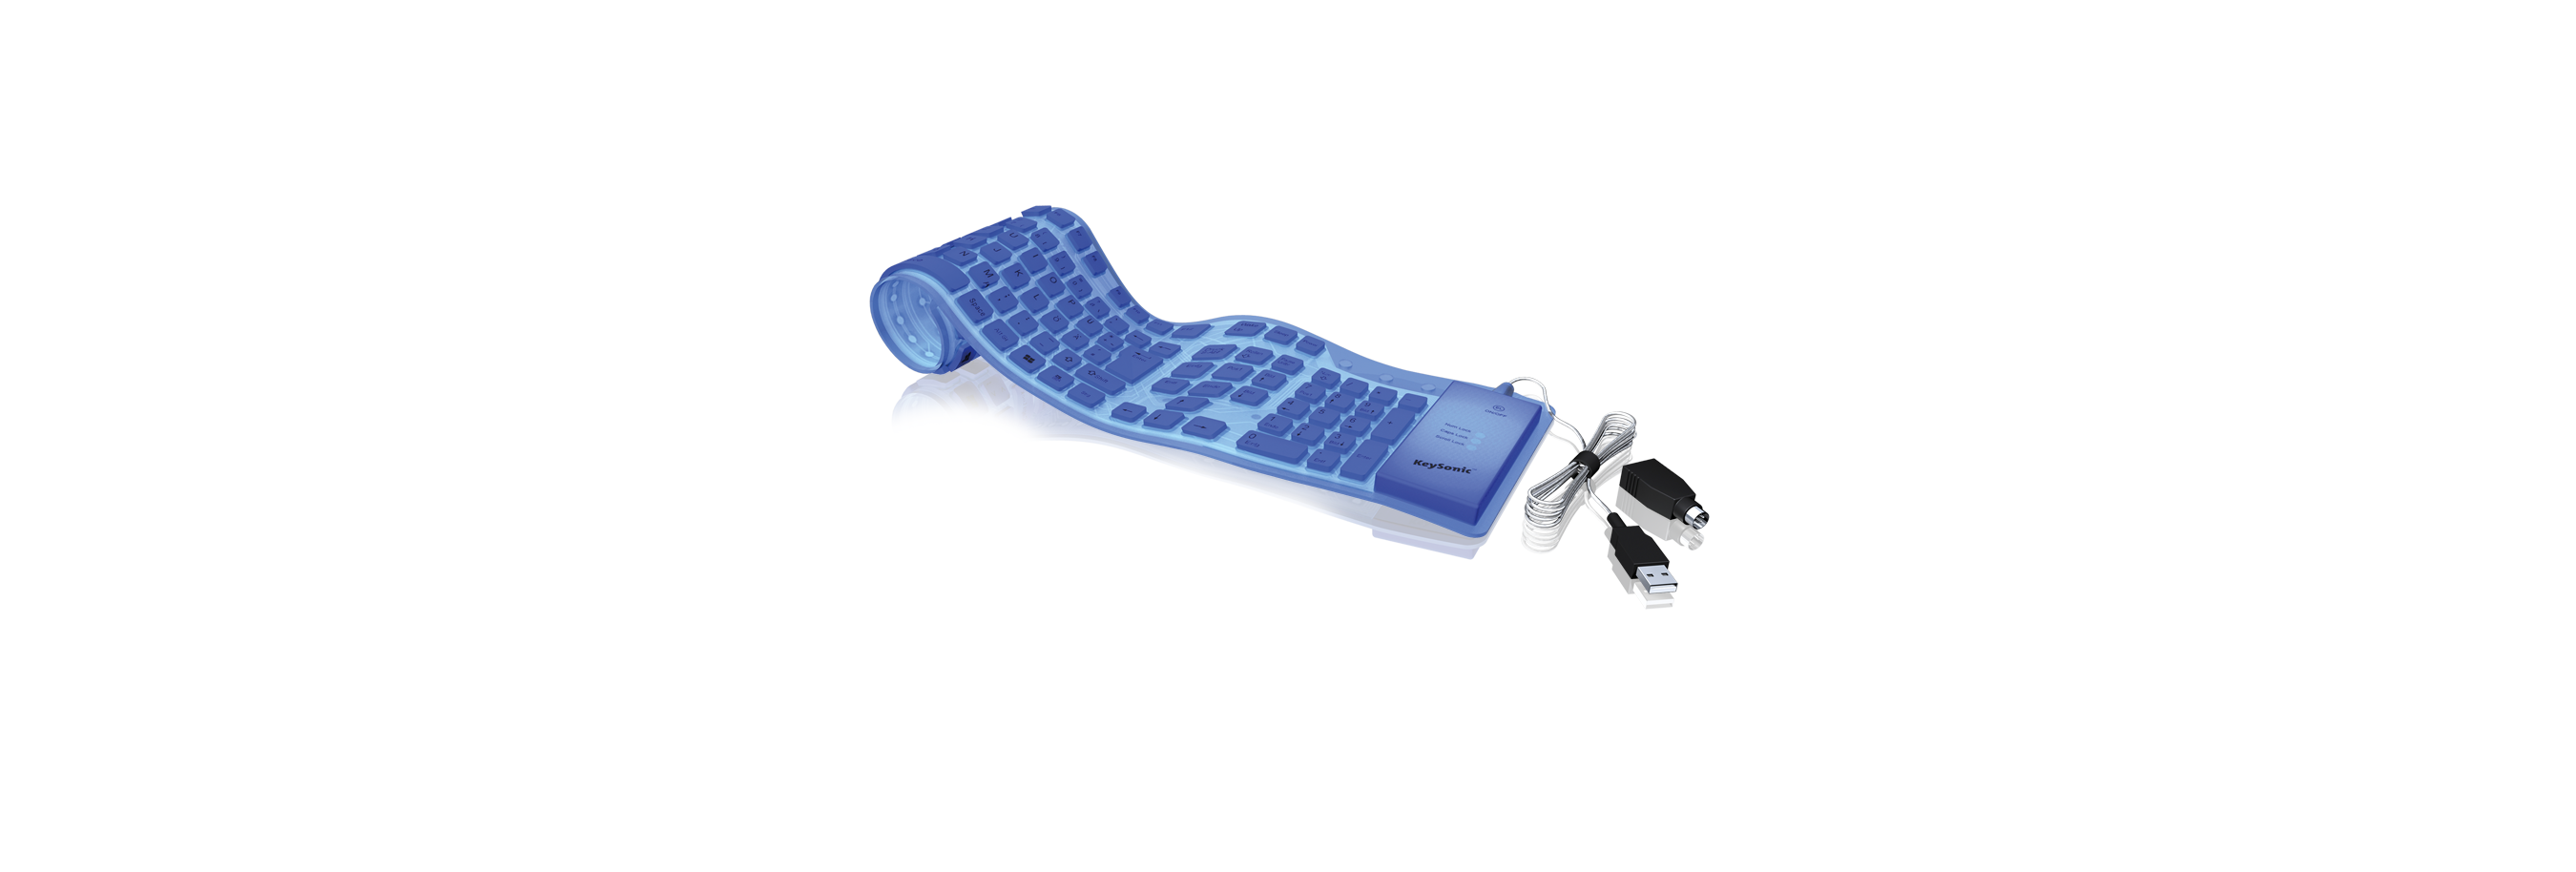 Full-Size Tastatur aus Silikon (blau)